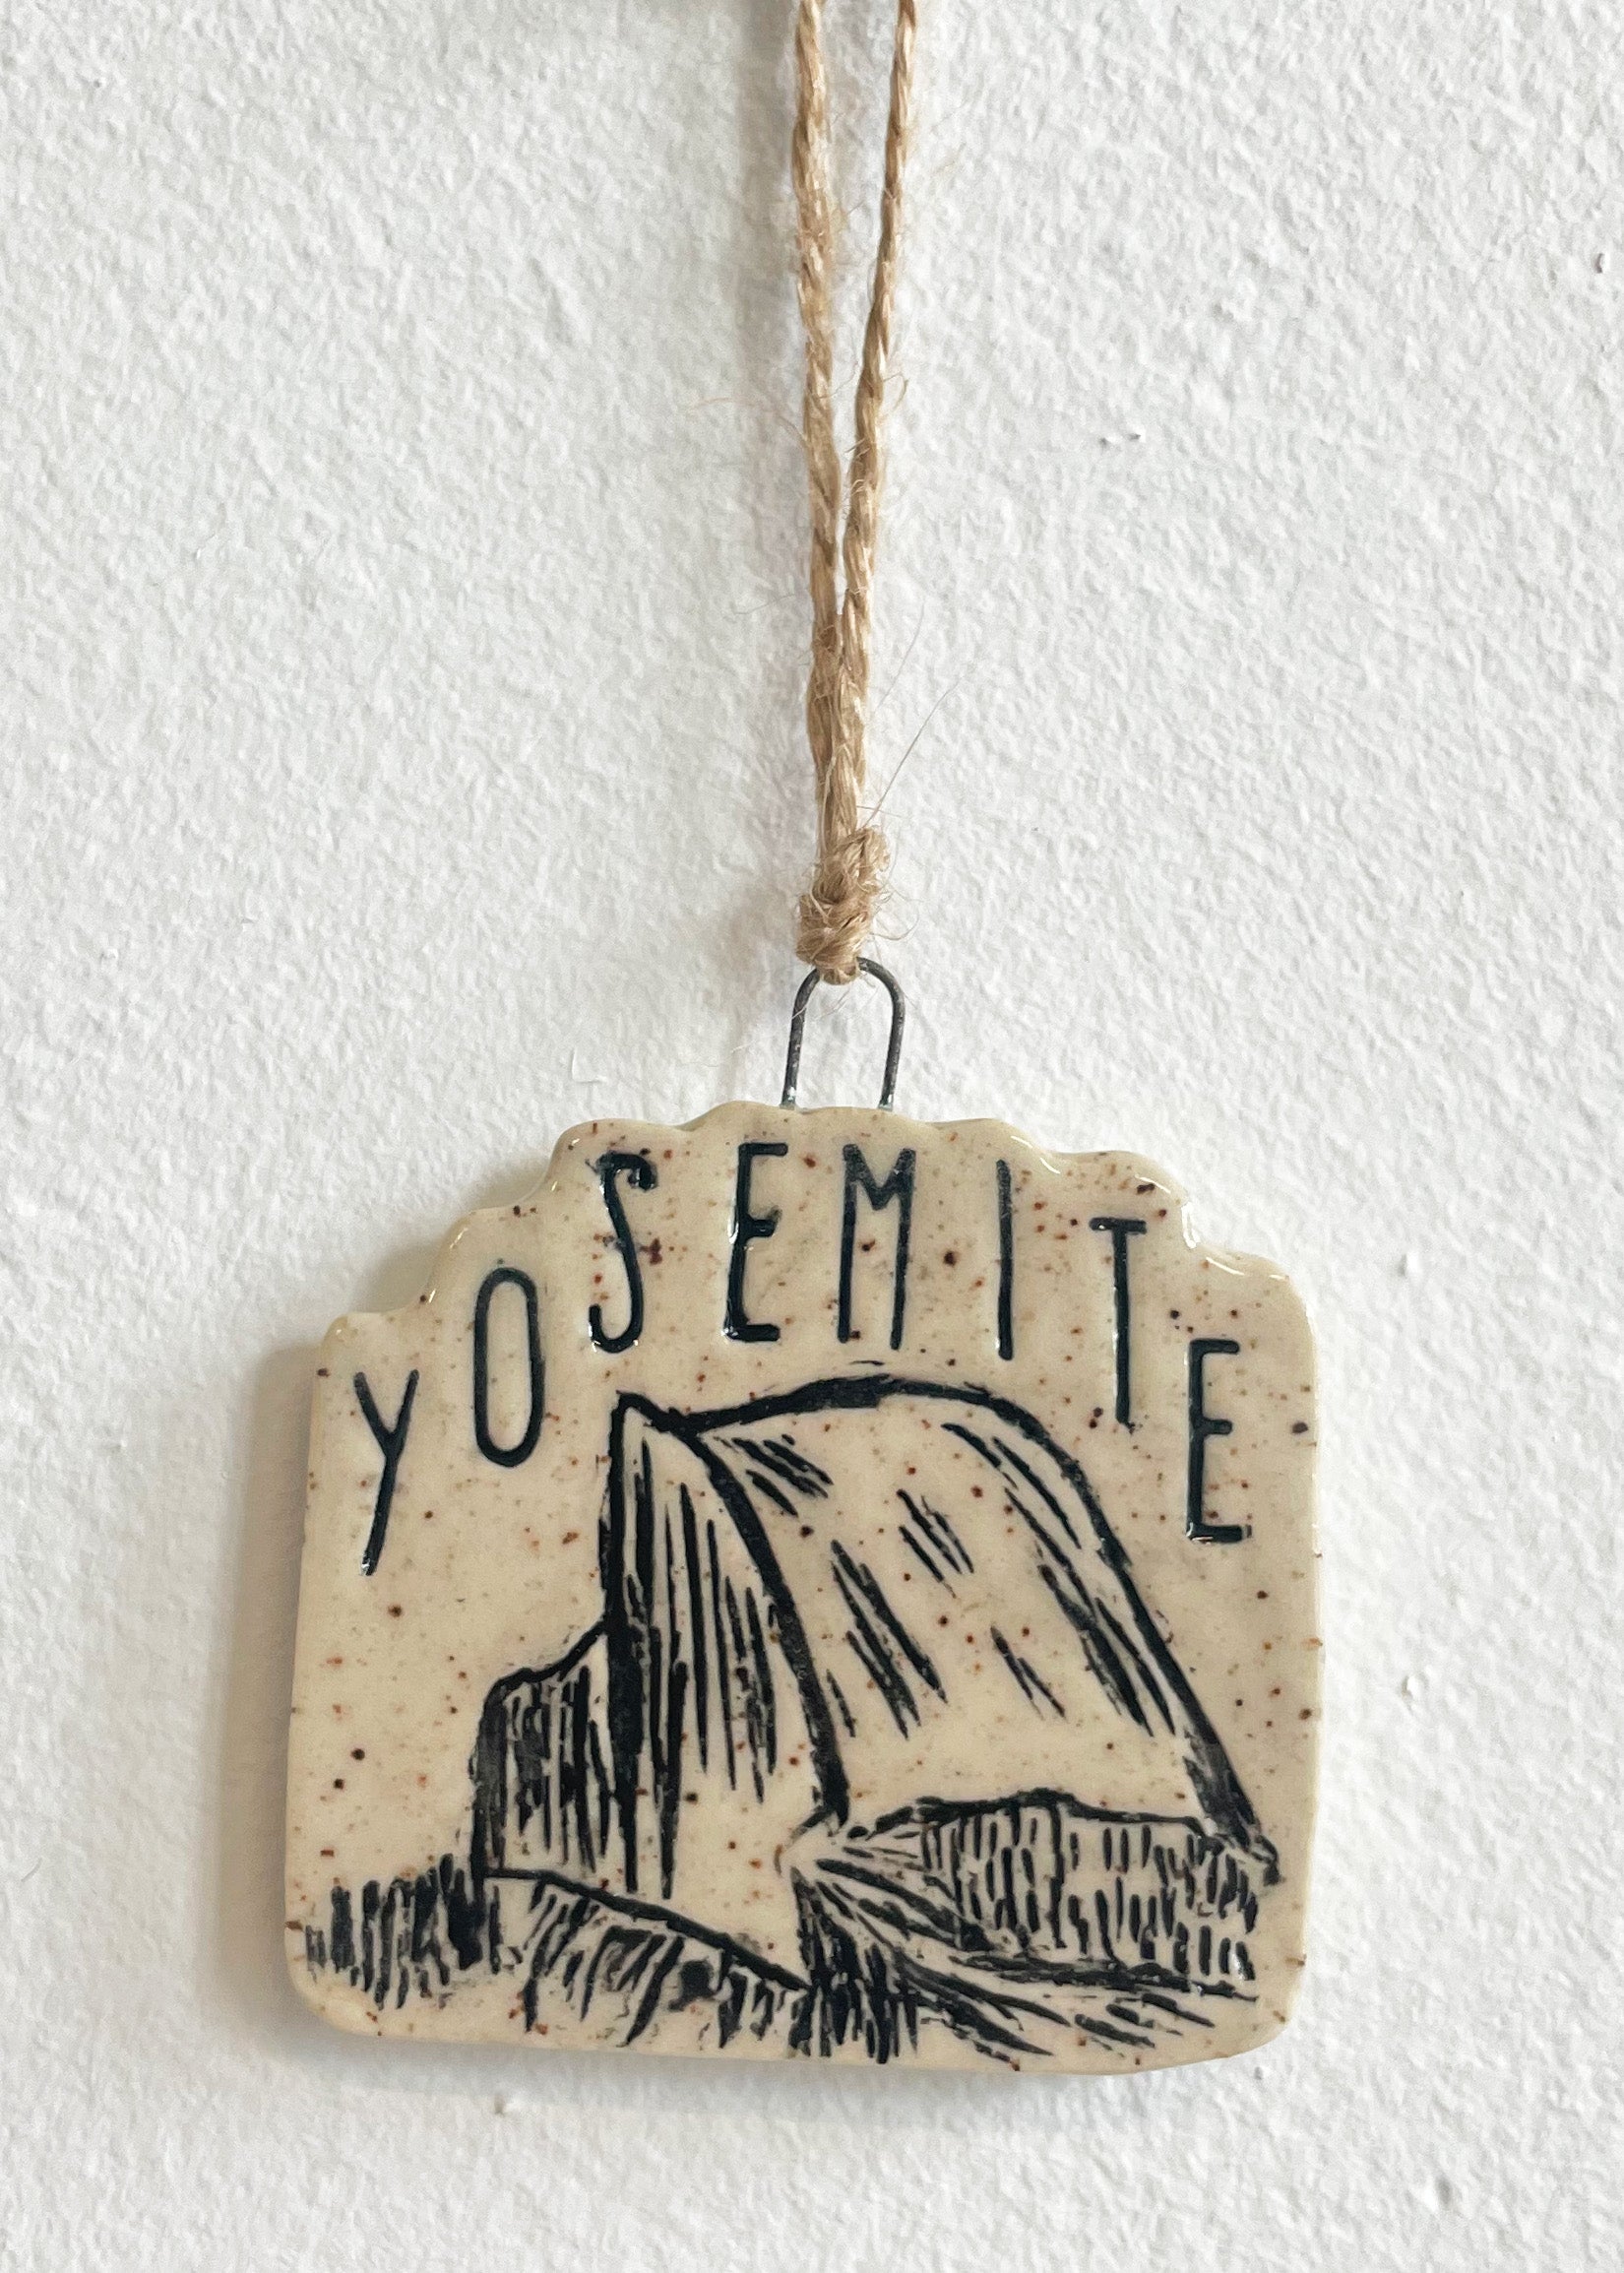 Yosemite Half Dome Ornament, No 2